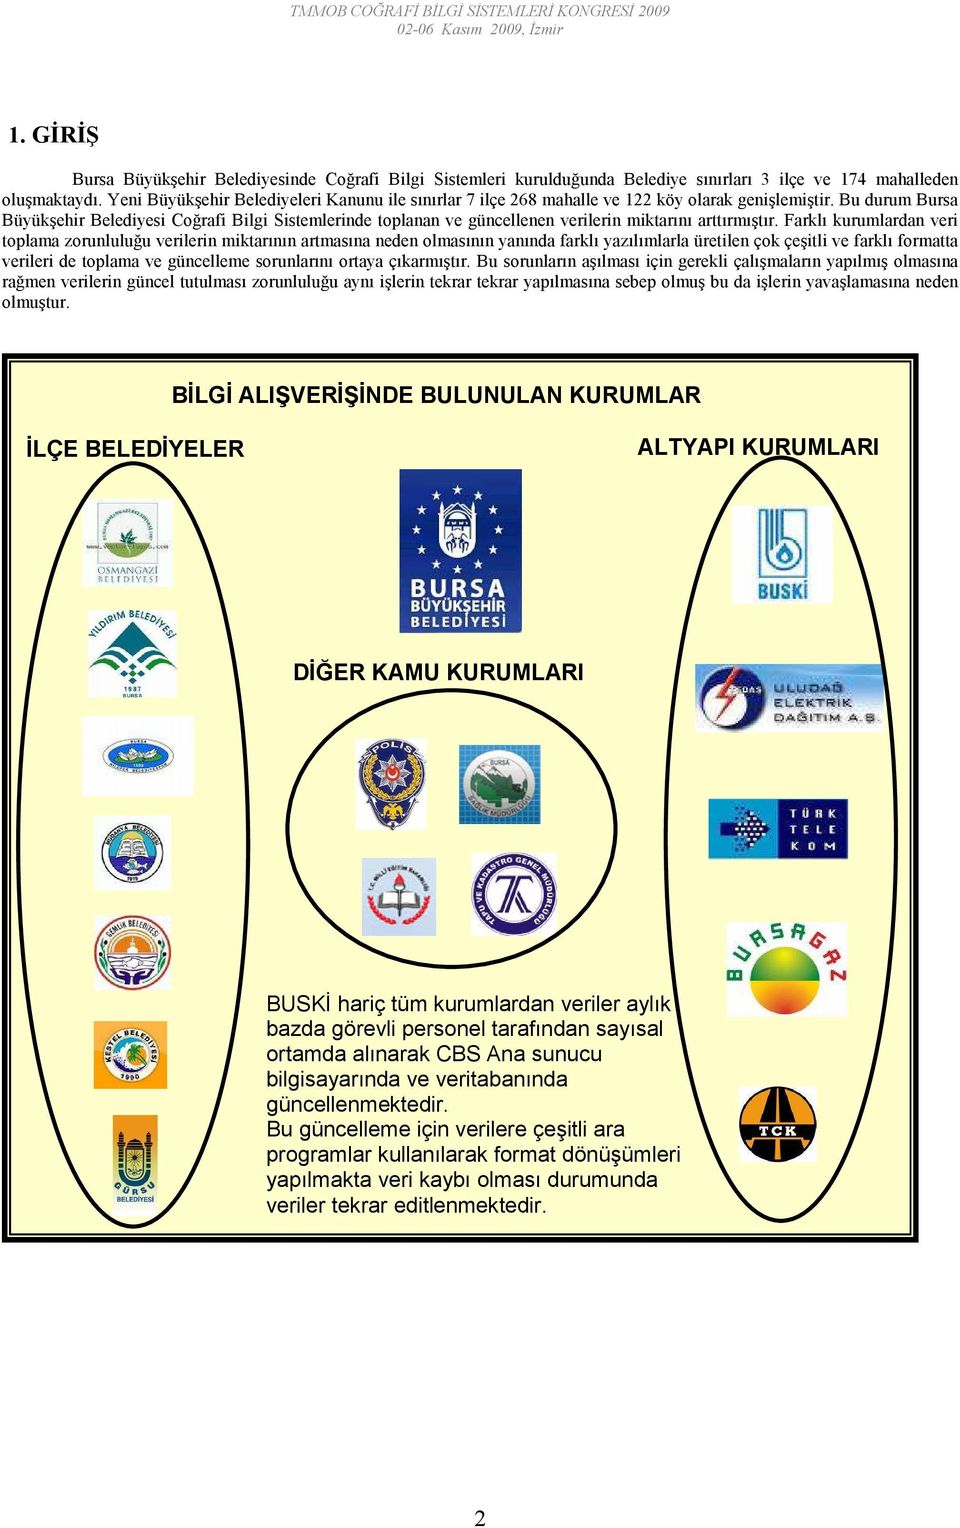 Bu durum Bursa Büyükşehir Belediyesi Coğrafi Bilgi Sistemlerinde toplanan ve güncellenen verilerin miktarını arttırmıştır.